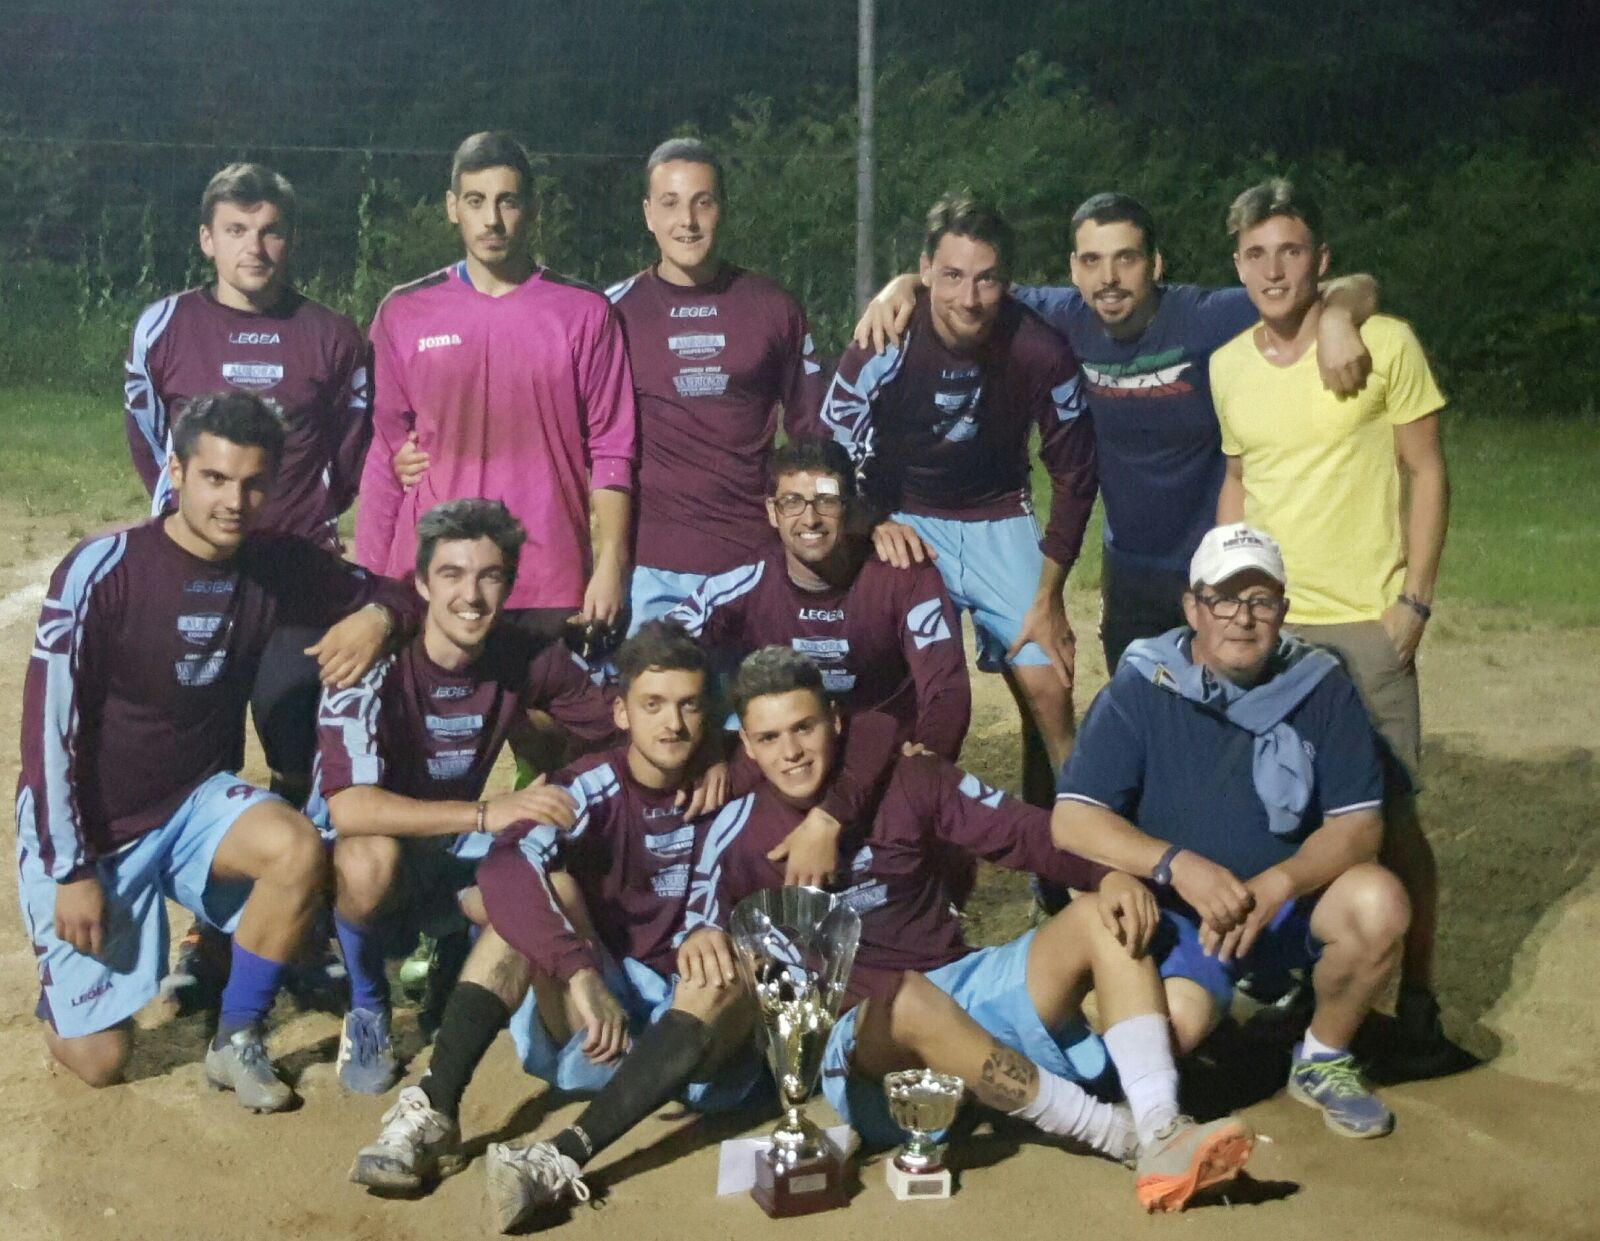 La squadra vincitrice dell'edizione 2016 (Dejoncini)